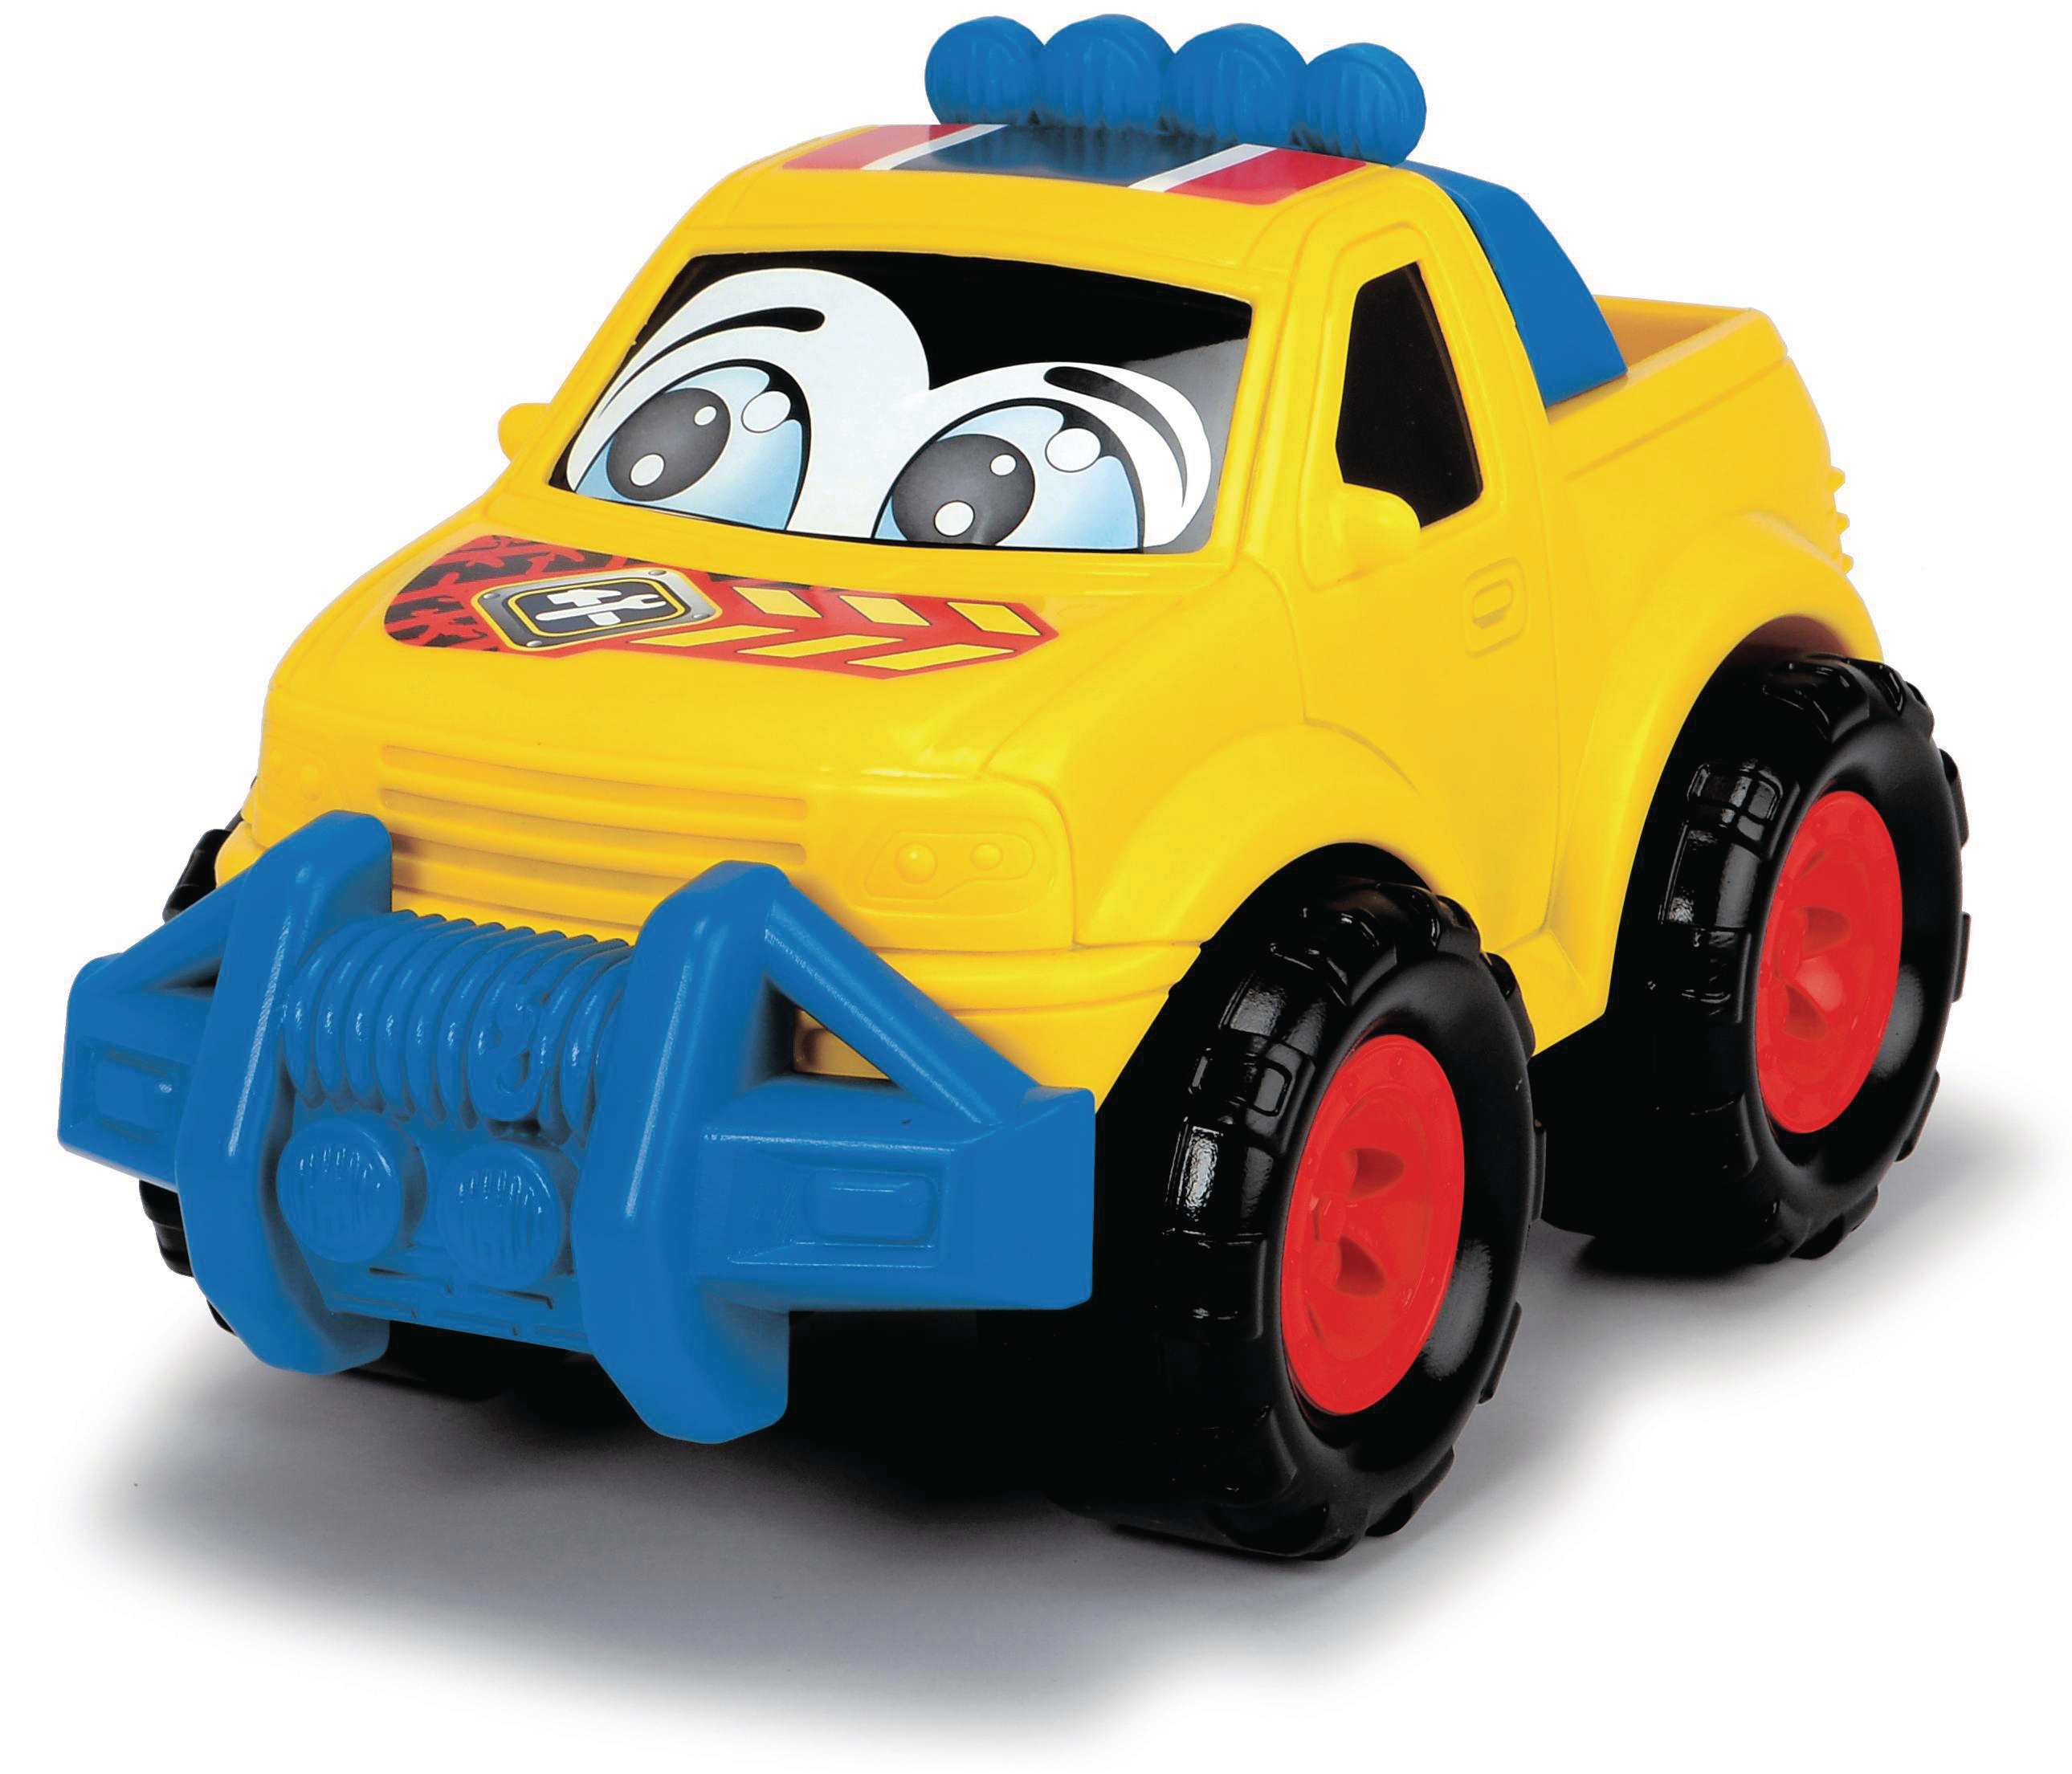 Spielzeugauto Mehrfarbig Speedy, 6-sortiert ABC DICKIE-TOYS Spielzeugauto,